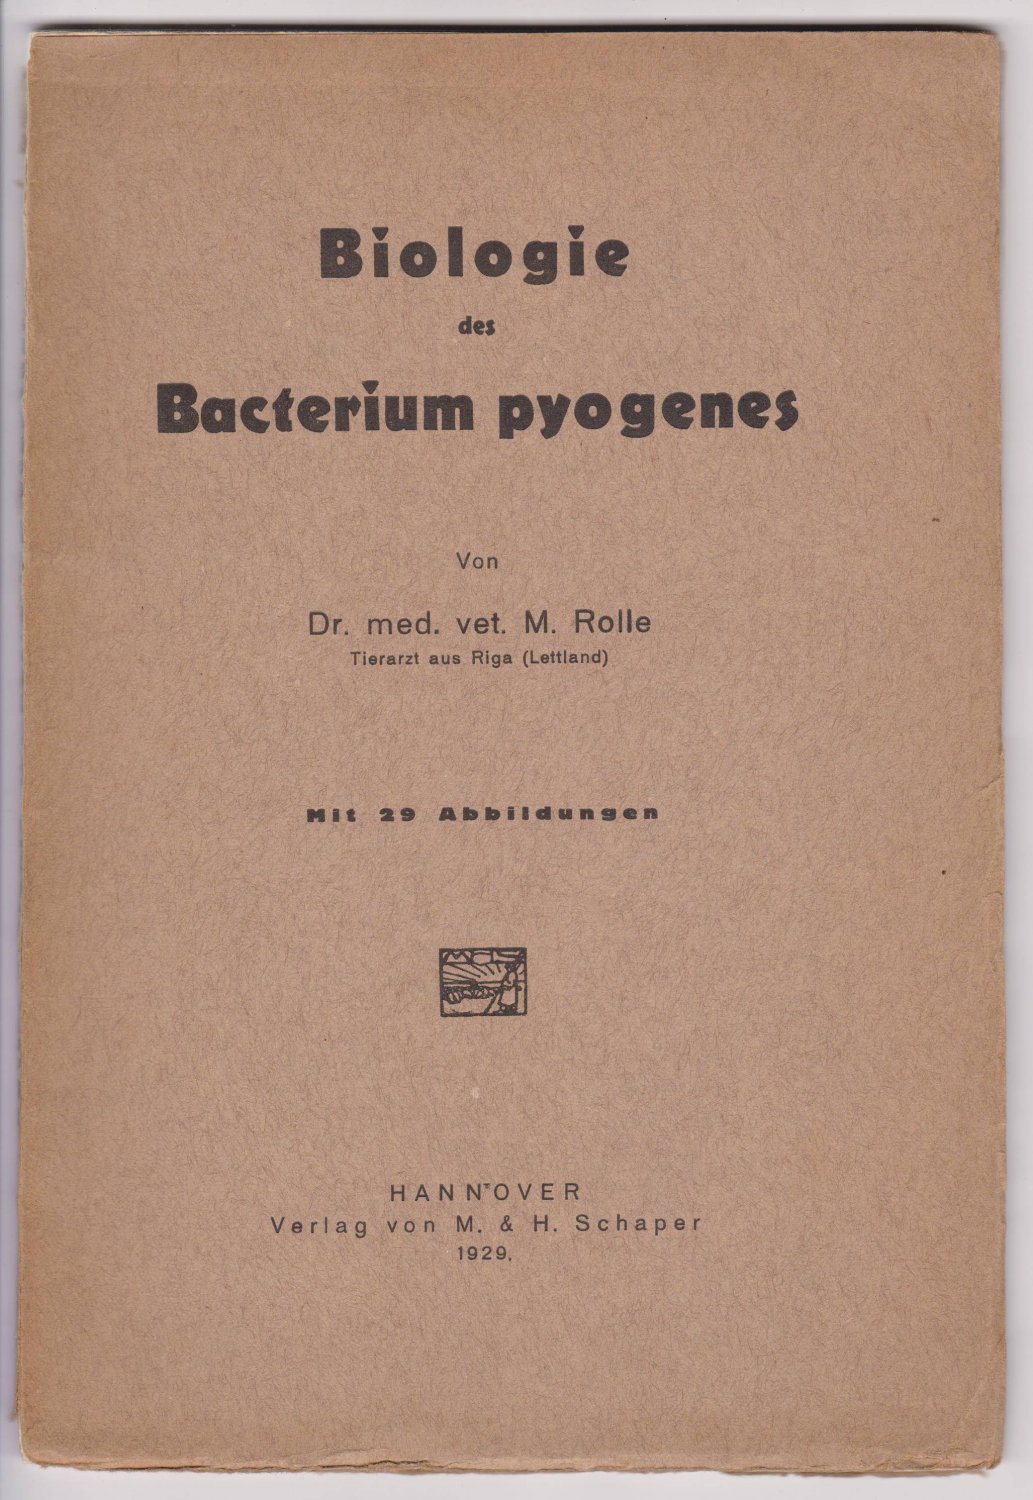 ROLLE, M. (Tierarzt aus Riga, Lettland):  Biologie des Bacterium pyogenes. Mit 29 Abbildungen. 